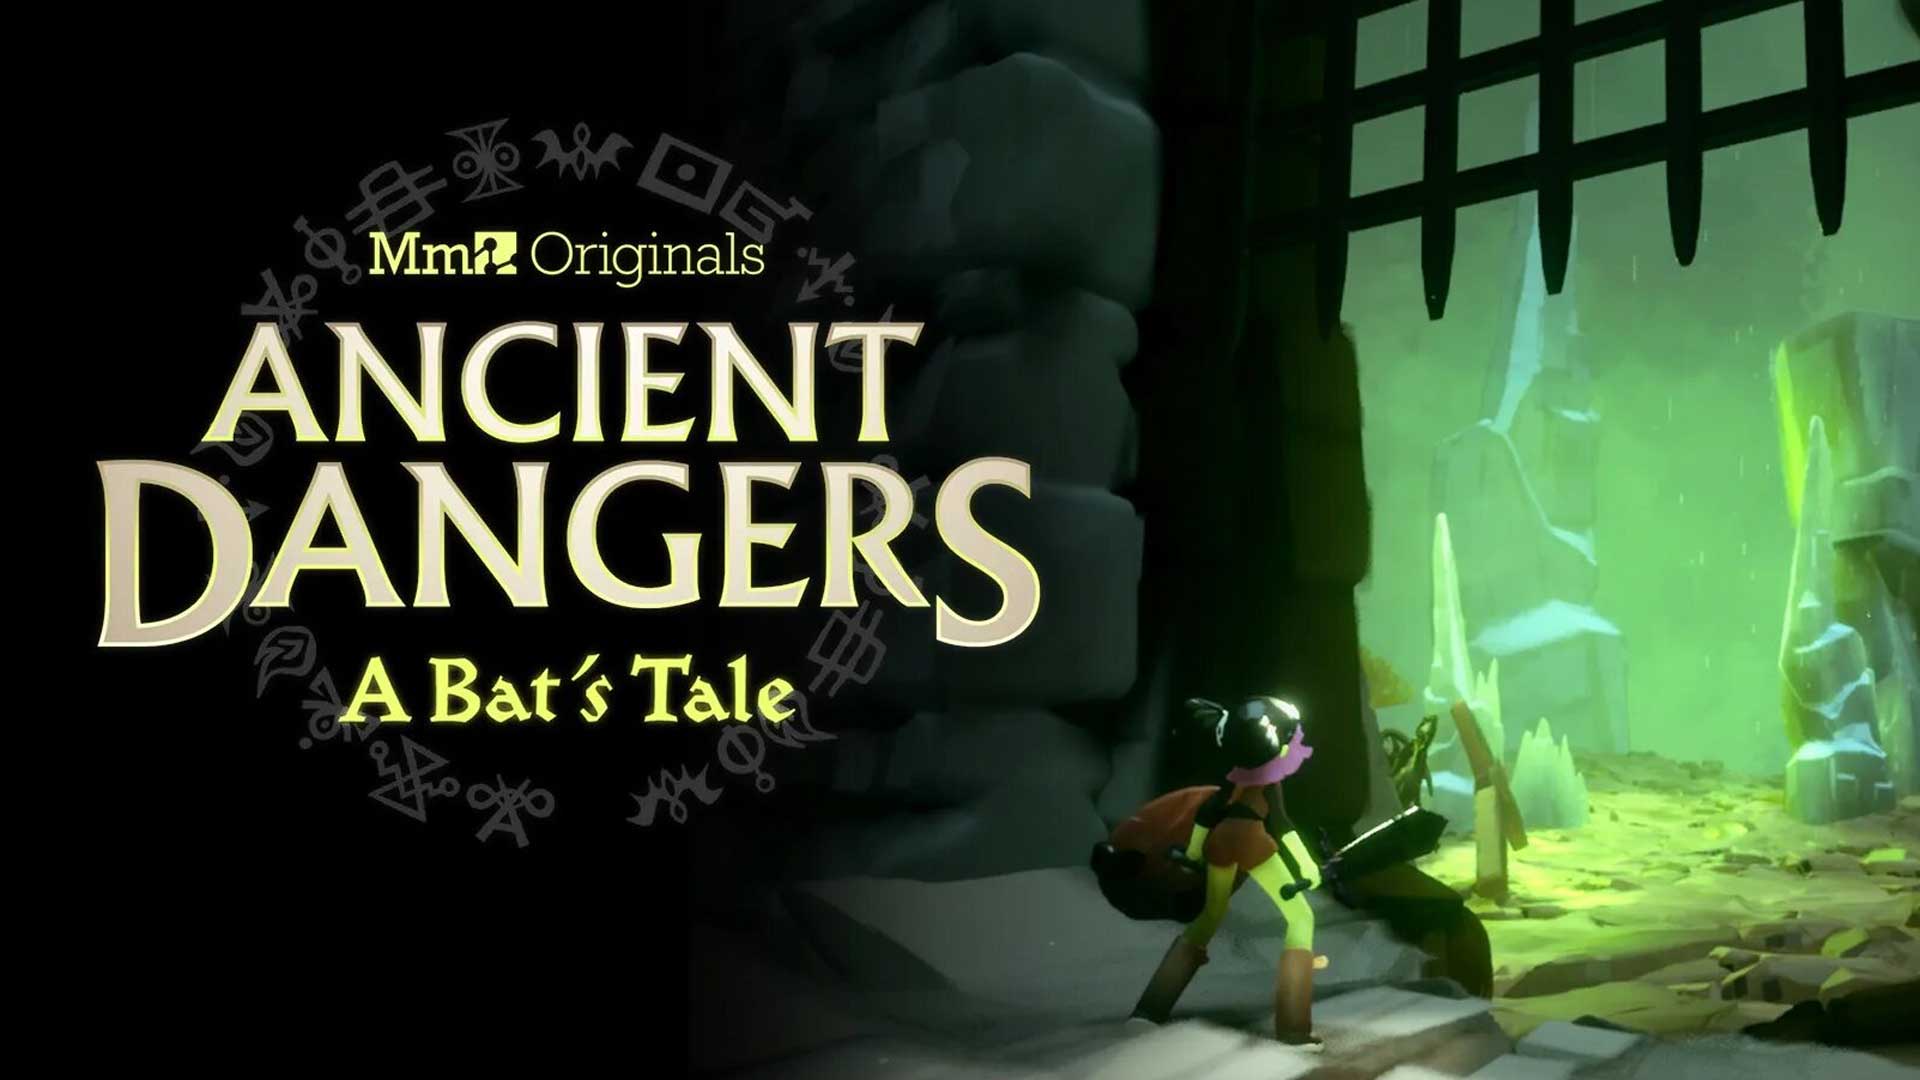 بازی Ancient Dangers: A Bat's Tale استودیو مدیا مولکول سونی برای بازی Dreams/دریمز پلی استیشن